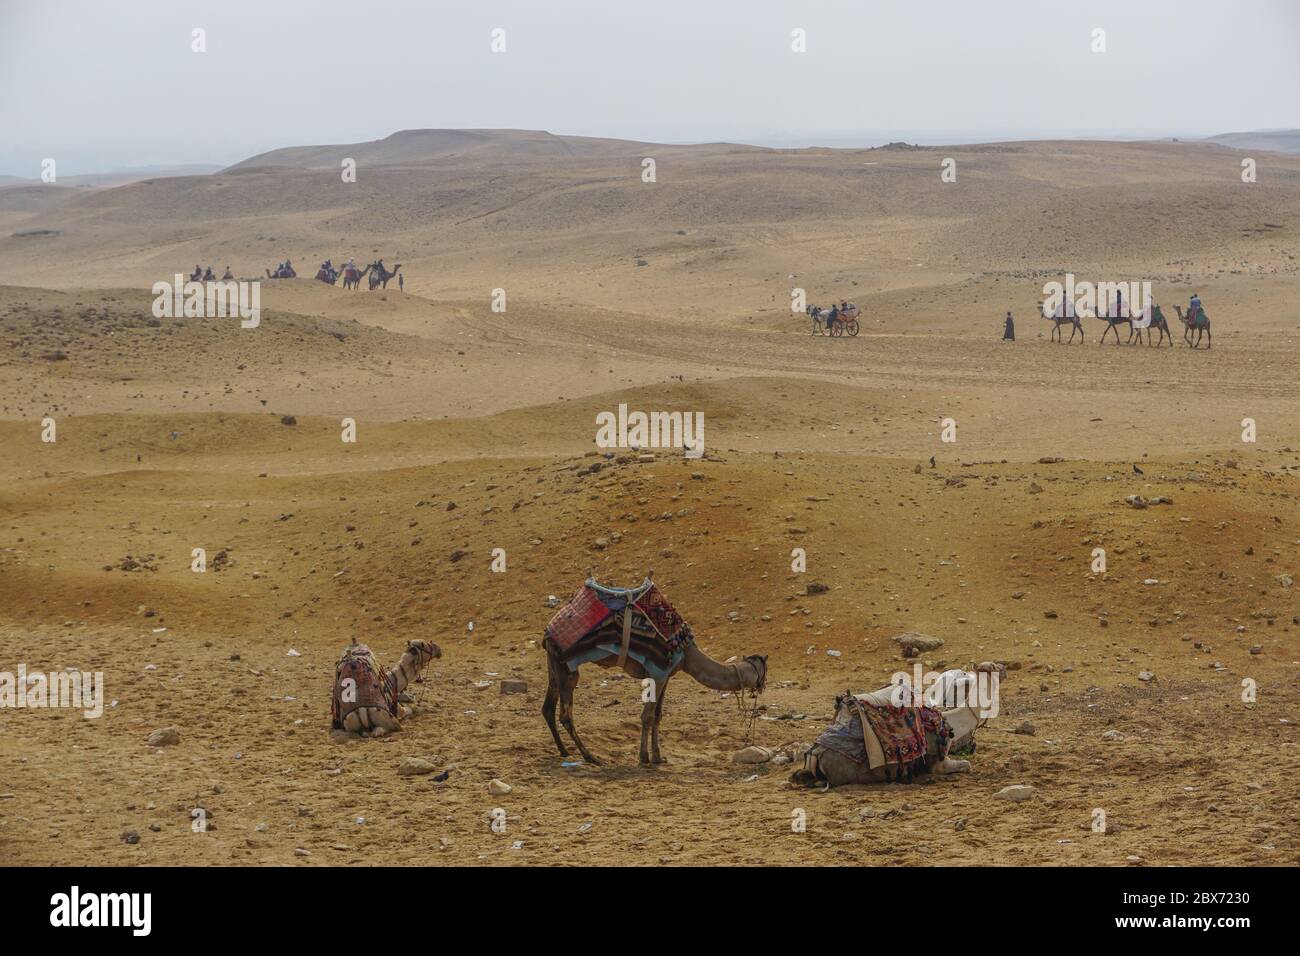 Giza, Egipto: Camellos con coloridas mantas de sillín esperan a los jinetes en arena cubierta de basura cerca del complejo de la pirámide de Khufu. Foto de stock